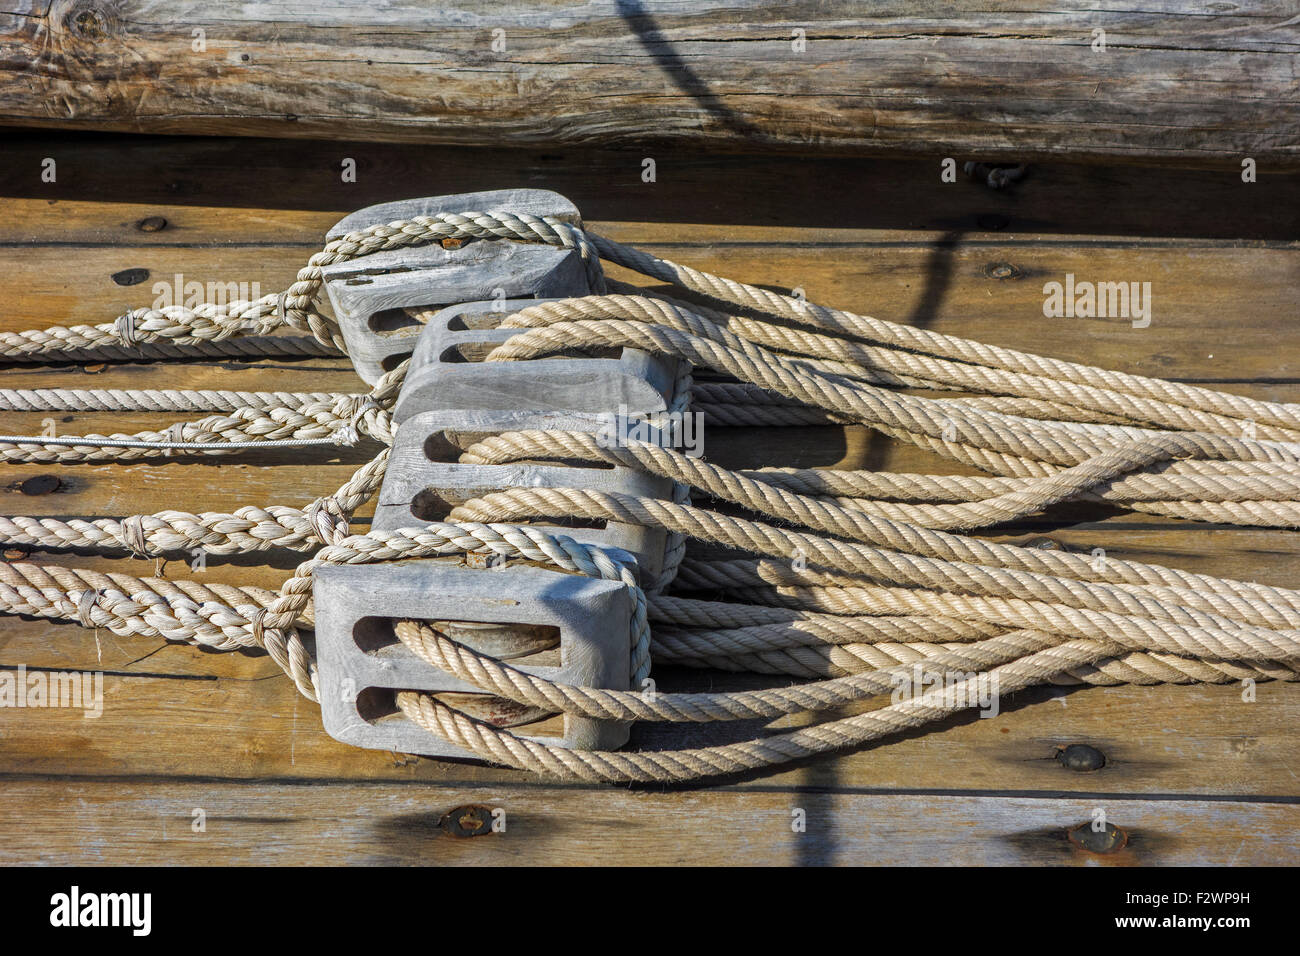 Cordes en poulies en bois / bloque sur le pont du bateau à voile / location Banque D'Images